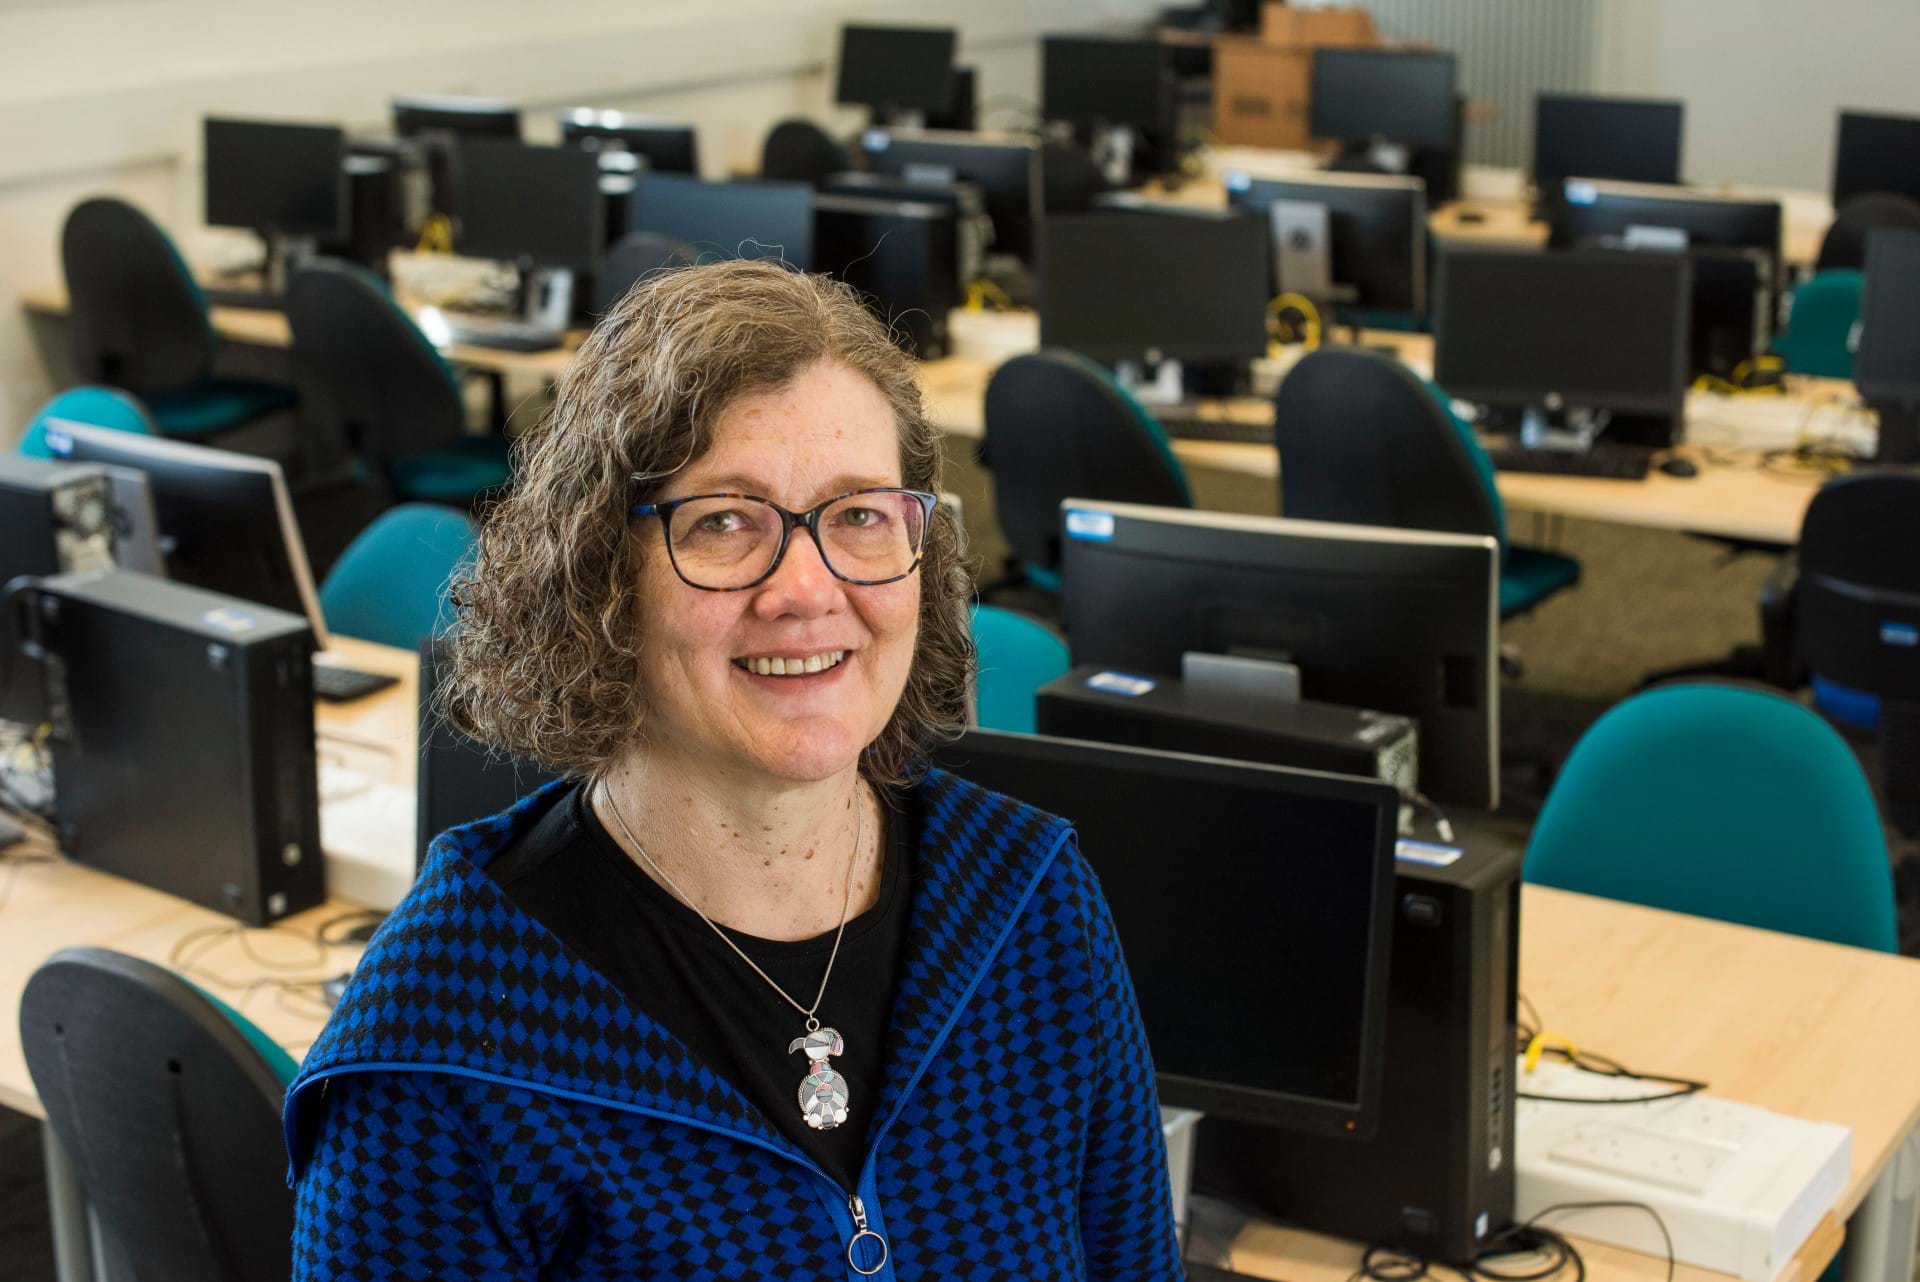 A photo of Professor Karen Renaud smiling